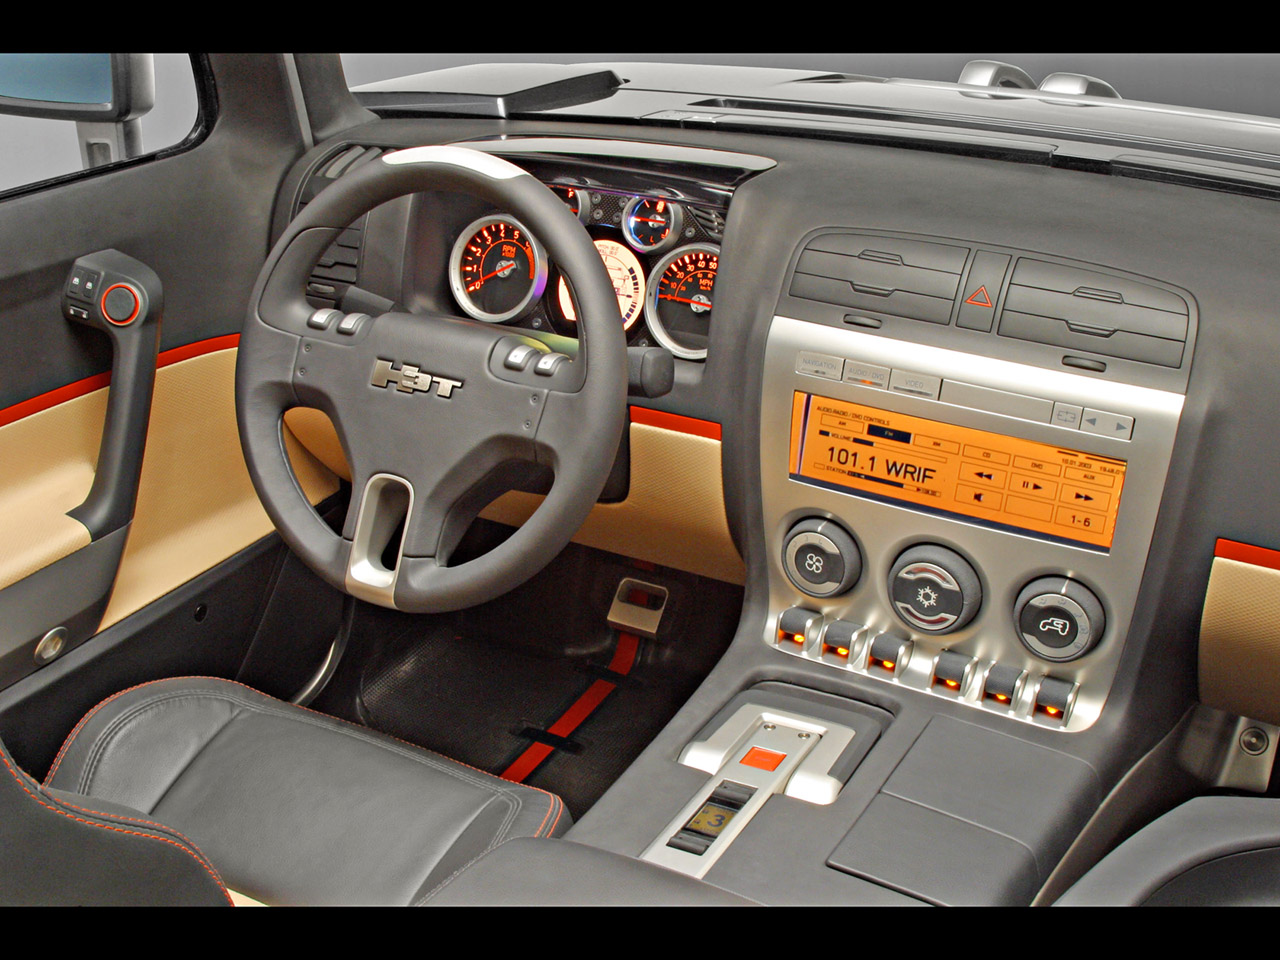 2003 Hummer H3T Concept - Interior - 1280x960 Wallpaper